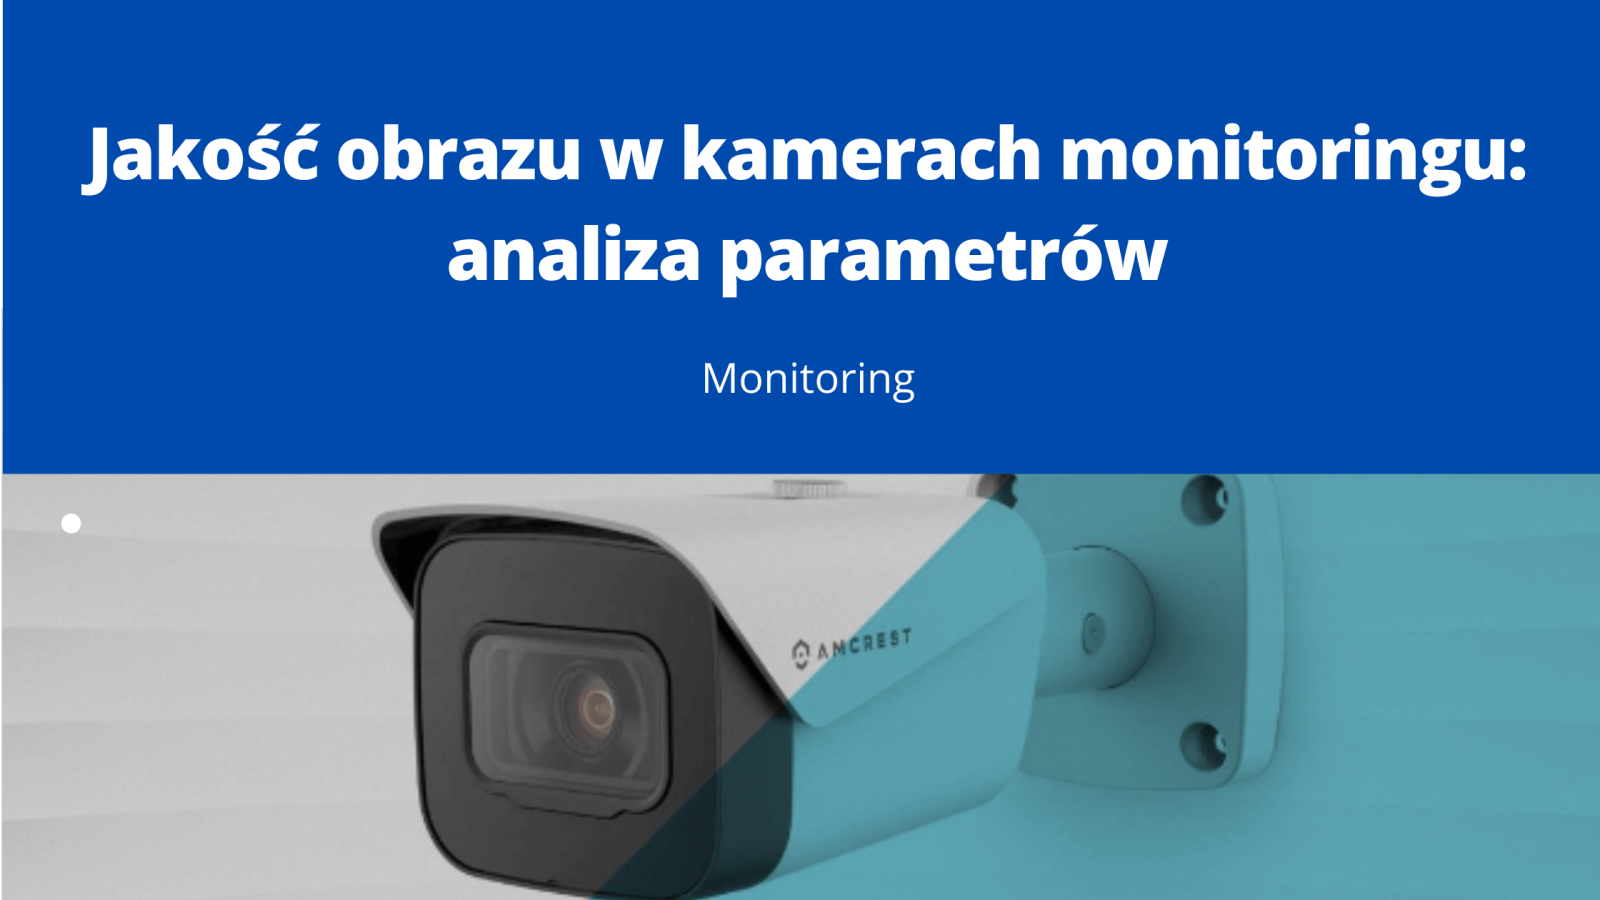 Jakość obrazu w kamerach monitoringu analiza parametrów